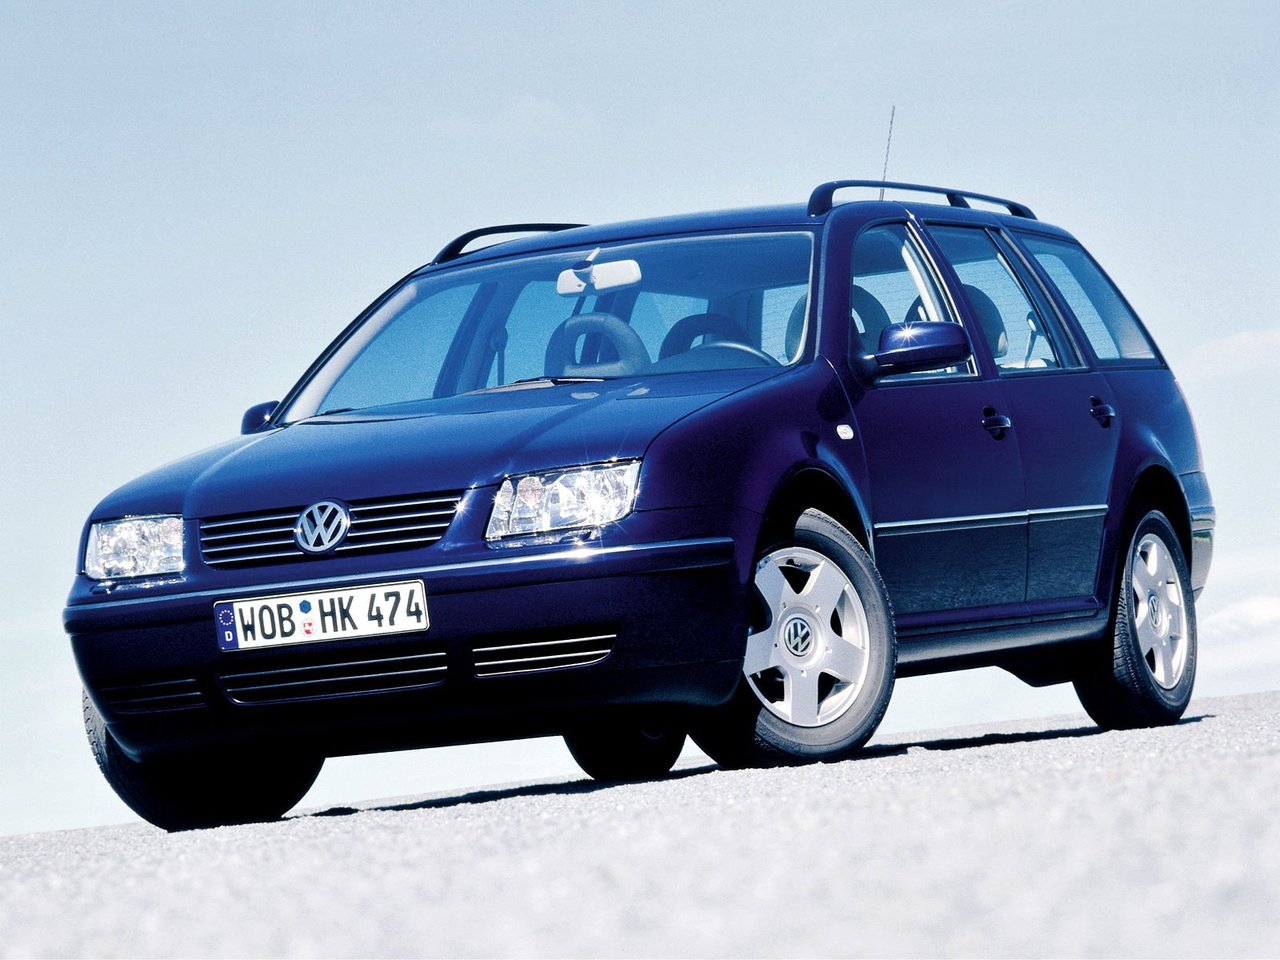 Расход газа десяти комплектаций универсала пять дверей Volkswagen Bora. Разница стоимости заправки газом и бензином. Автономный пробег до и после установки ГБО.